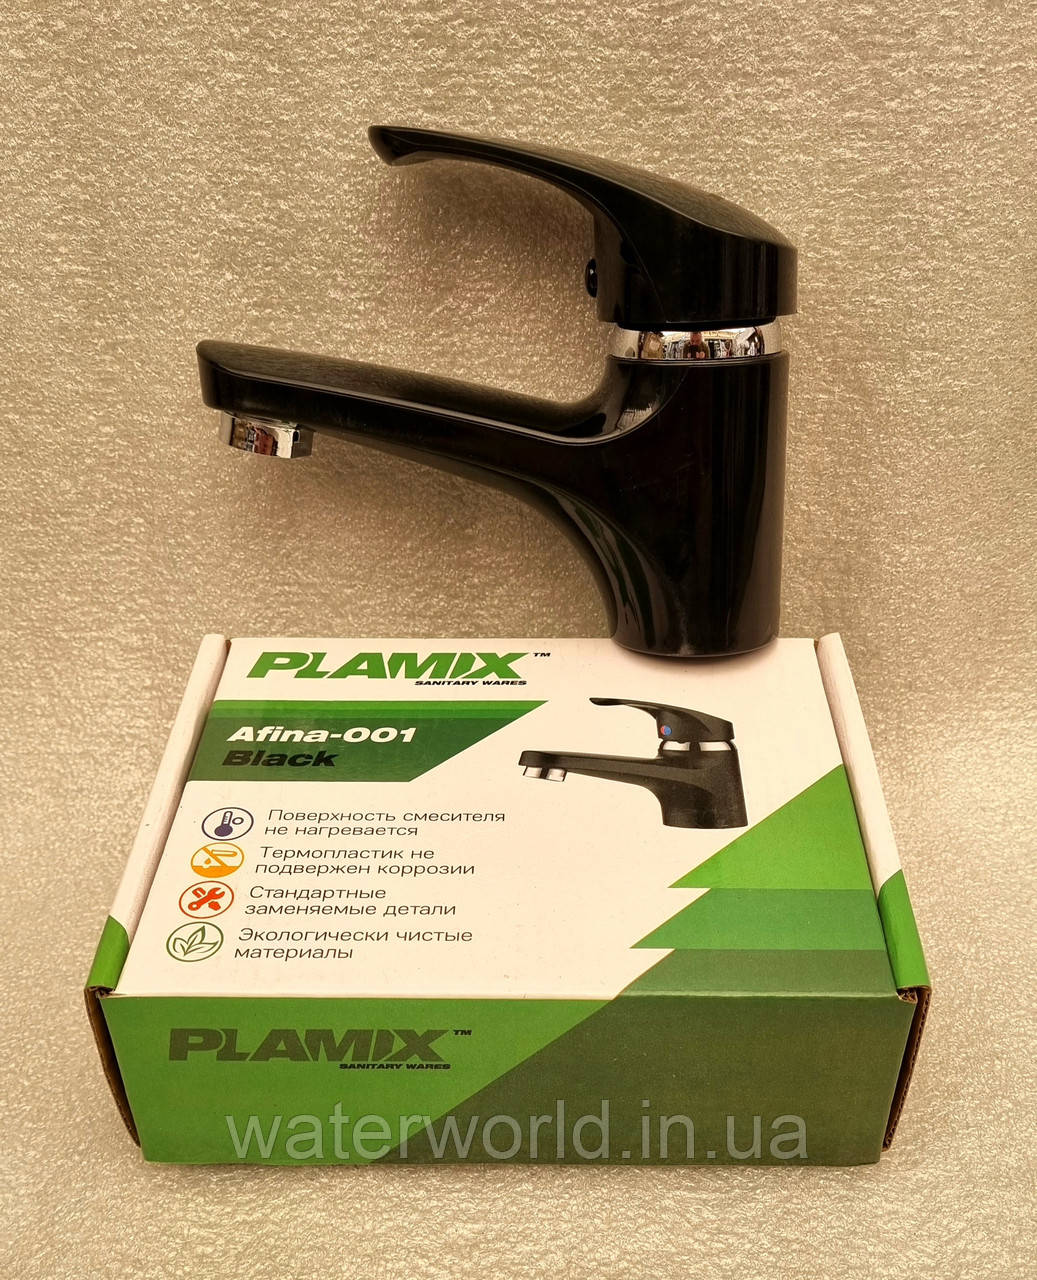 Змішувач на умивальник пламікс Afina-001 Black чорного кольору з термопластику, фото 1